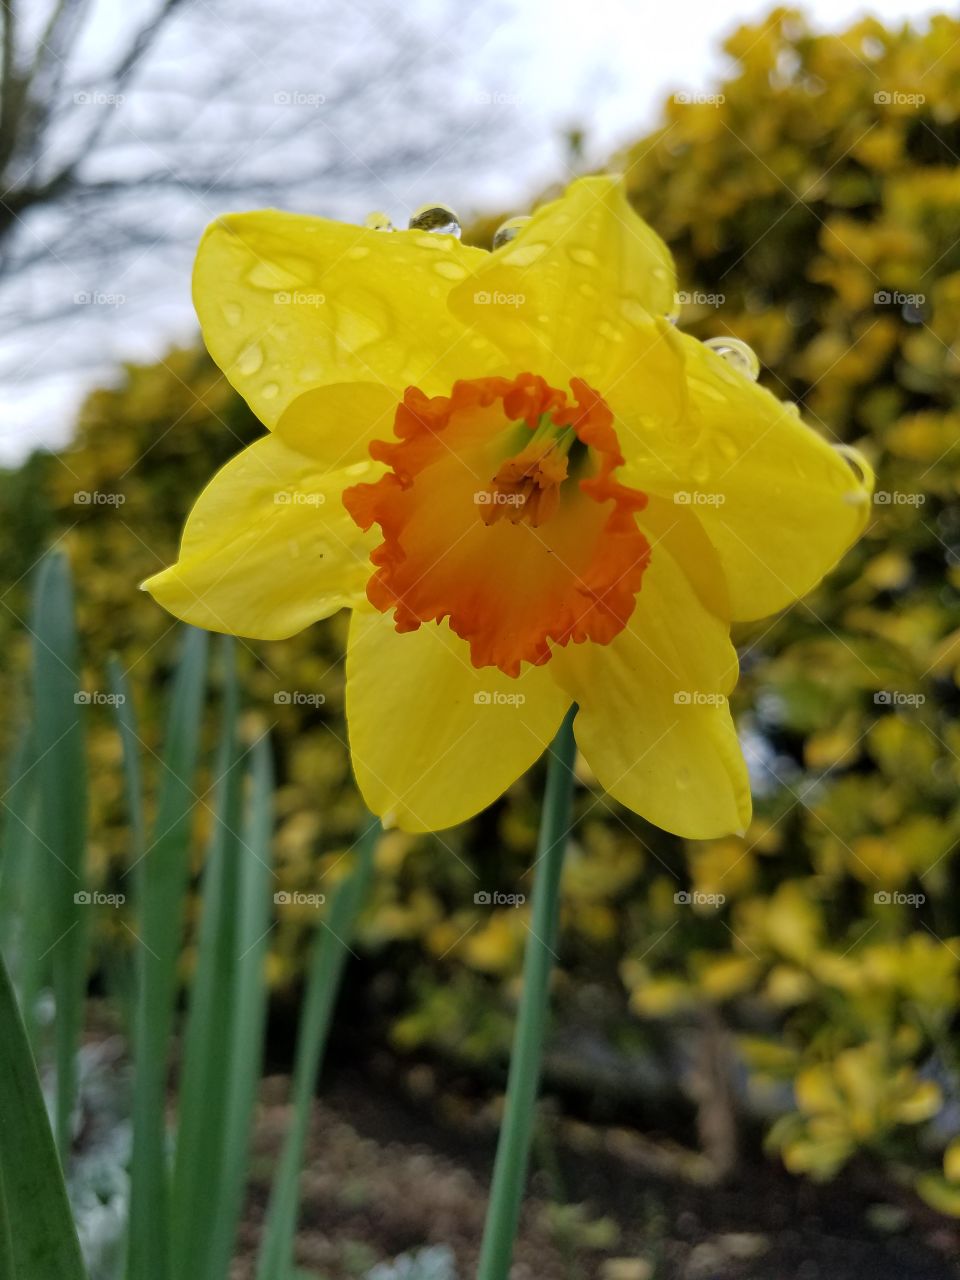 A morning daffodil.